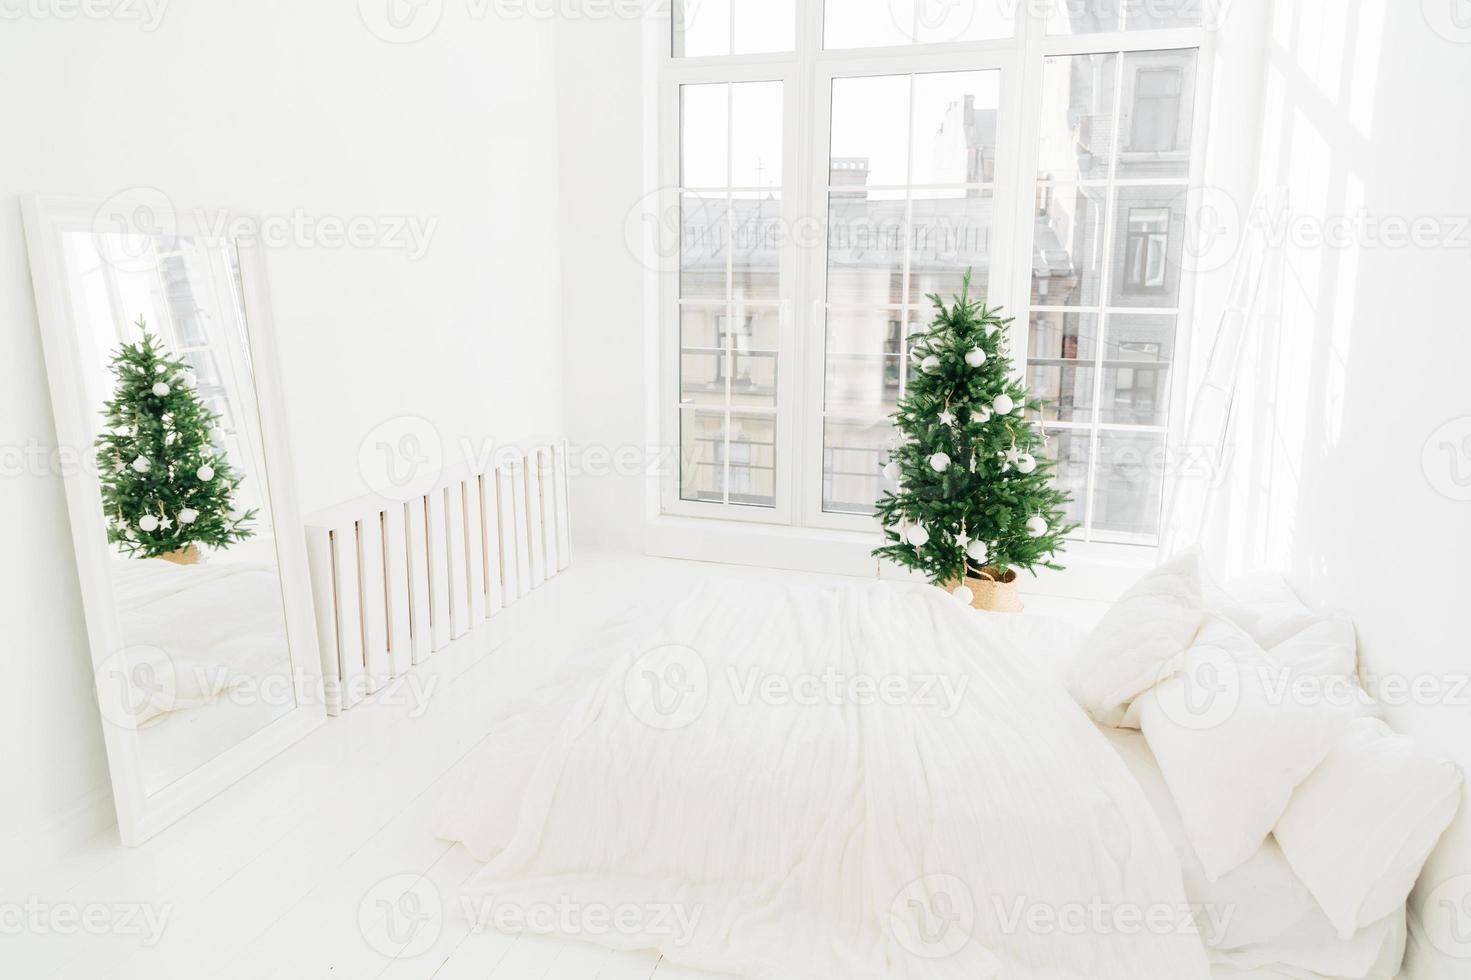 comfort, thuis en kerstavond concept. slaapkamer met wit zacht bed, spiegel, groot raam voor licht dat de kamer binnenkomt, versierde nieuwjaarsboom en ladder. vakantie decoratie. foto